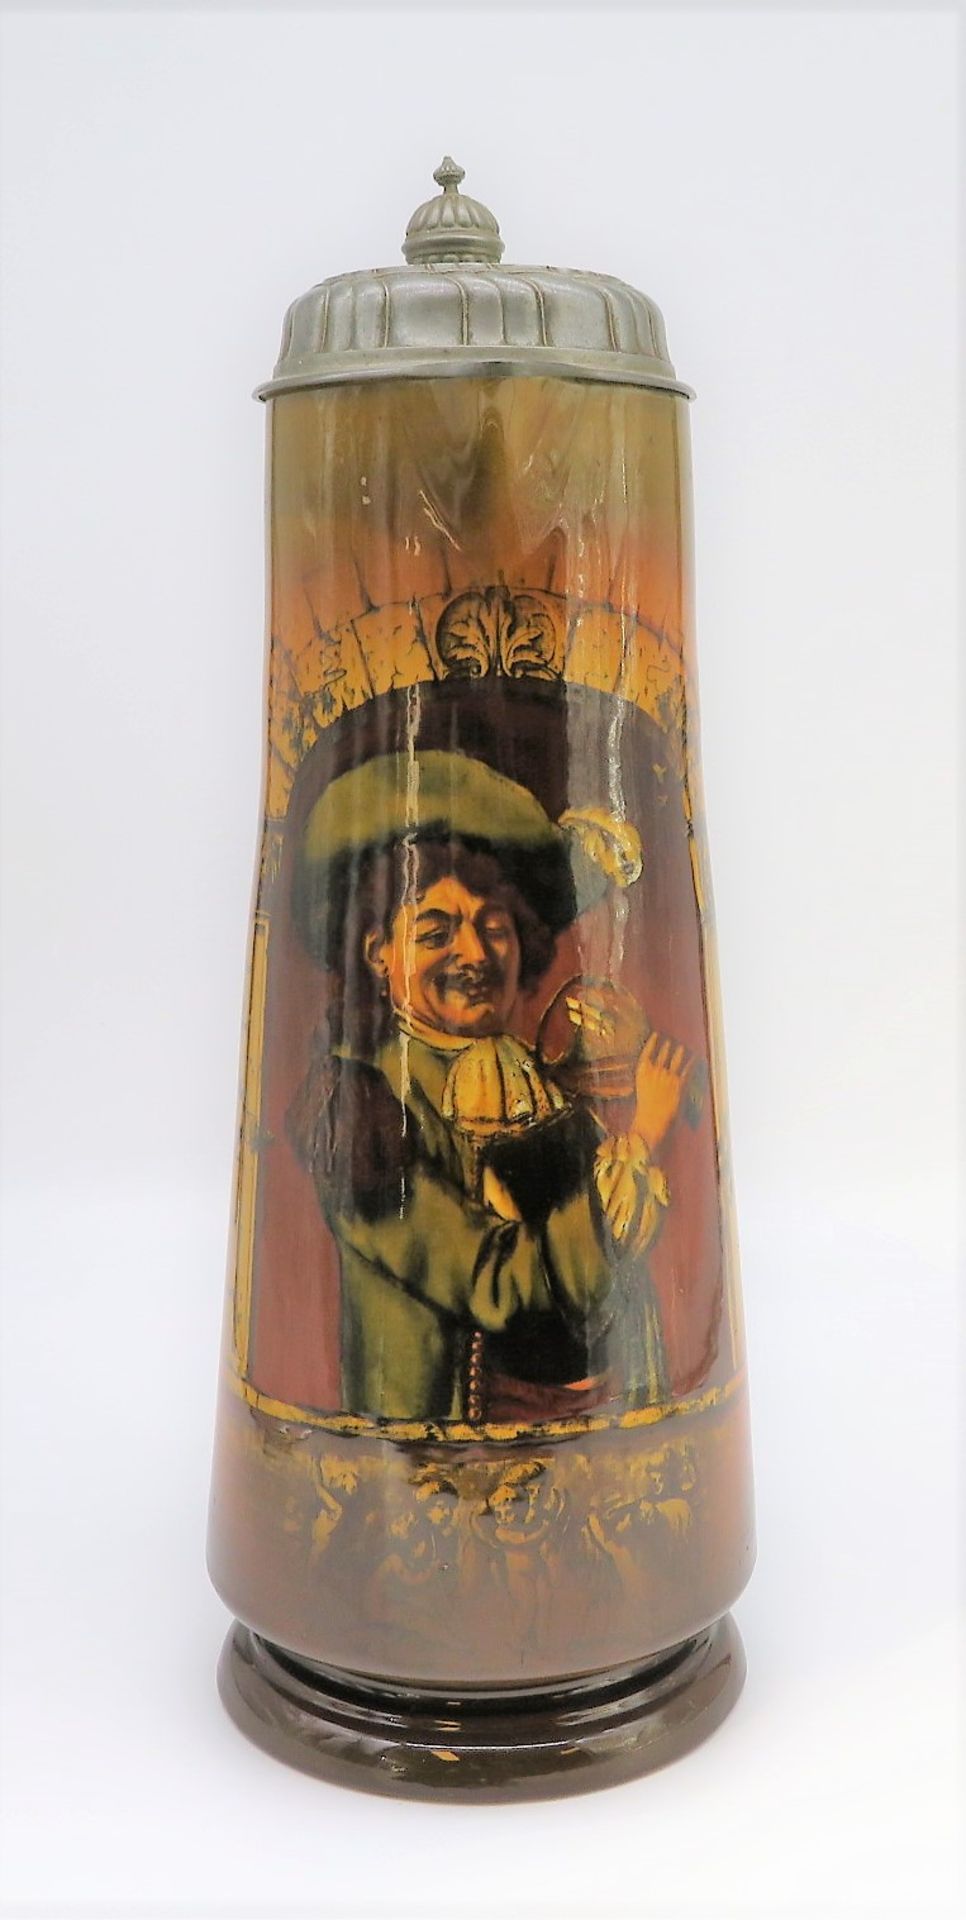 Großer Bierhumpen, Villeroy & Boch Mettlach, 19. Jahrhundert, Steingut mit polychromem Dekor eines 